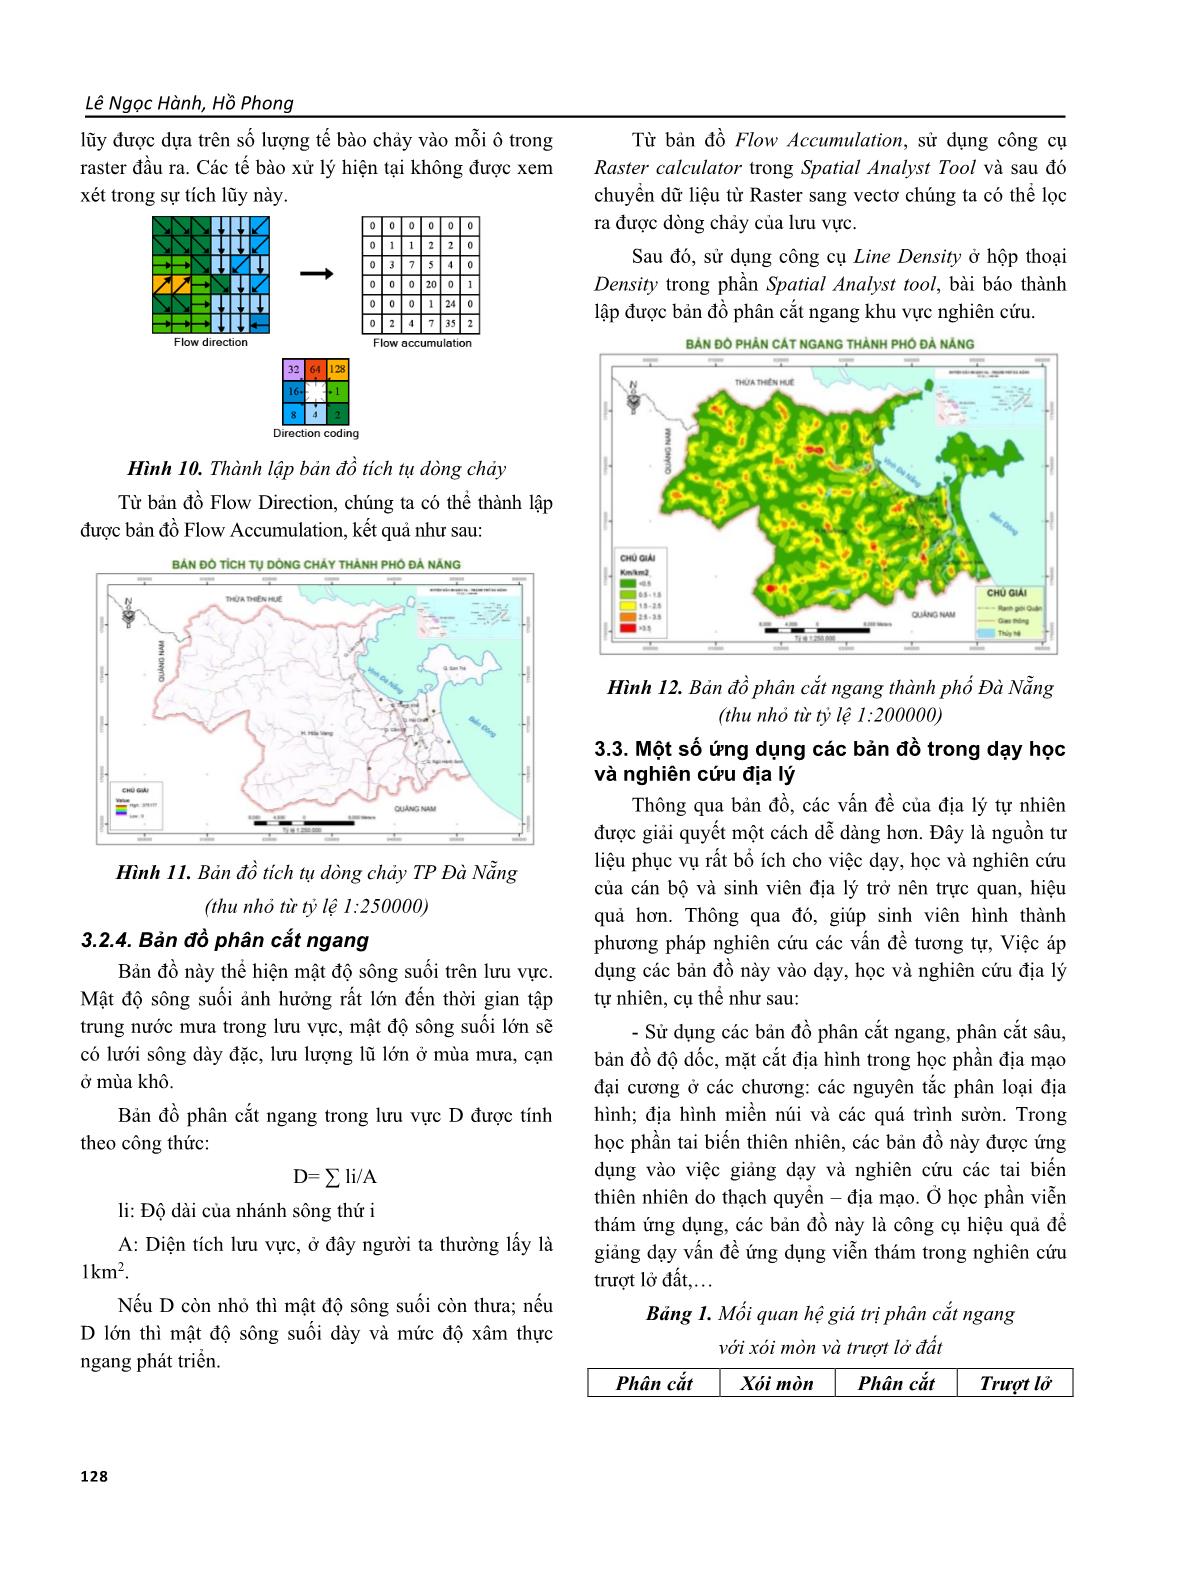 Phương pháp thành lập một số bản đồ địa mạo và thủy văn thành phố Đà Nẵng bằng ảnh viễn thám phục vụ dạy học và nghiên cứu trang 5